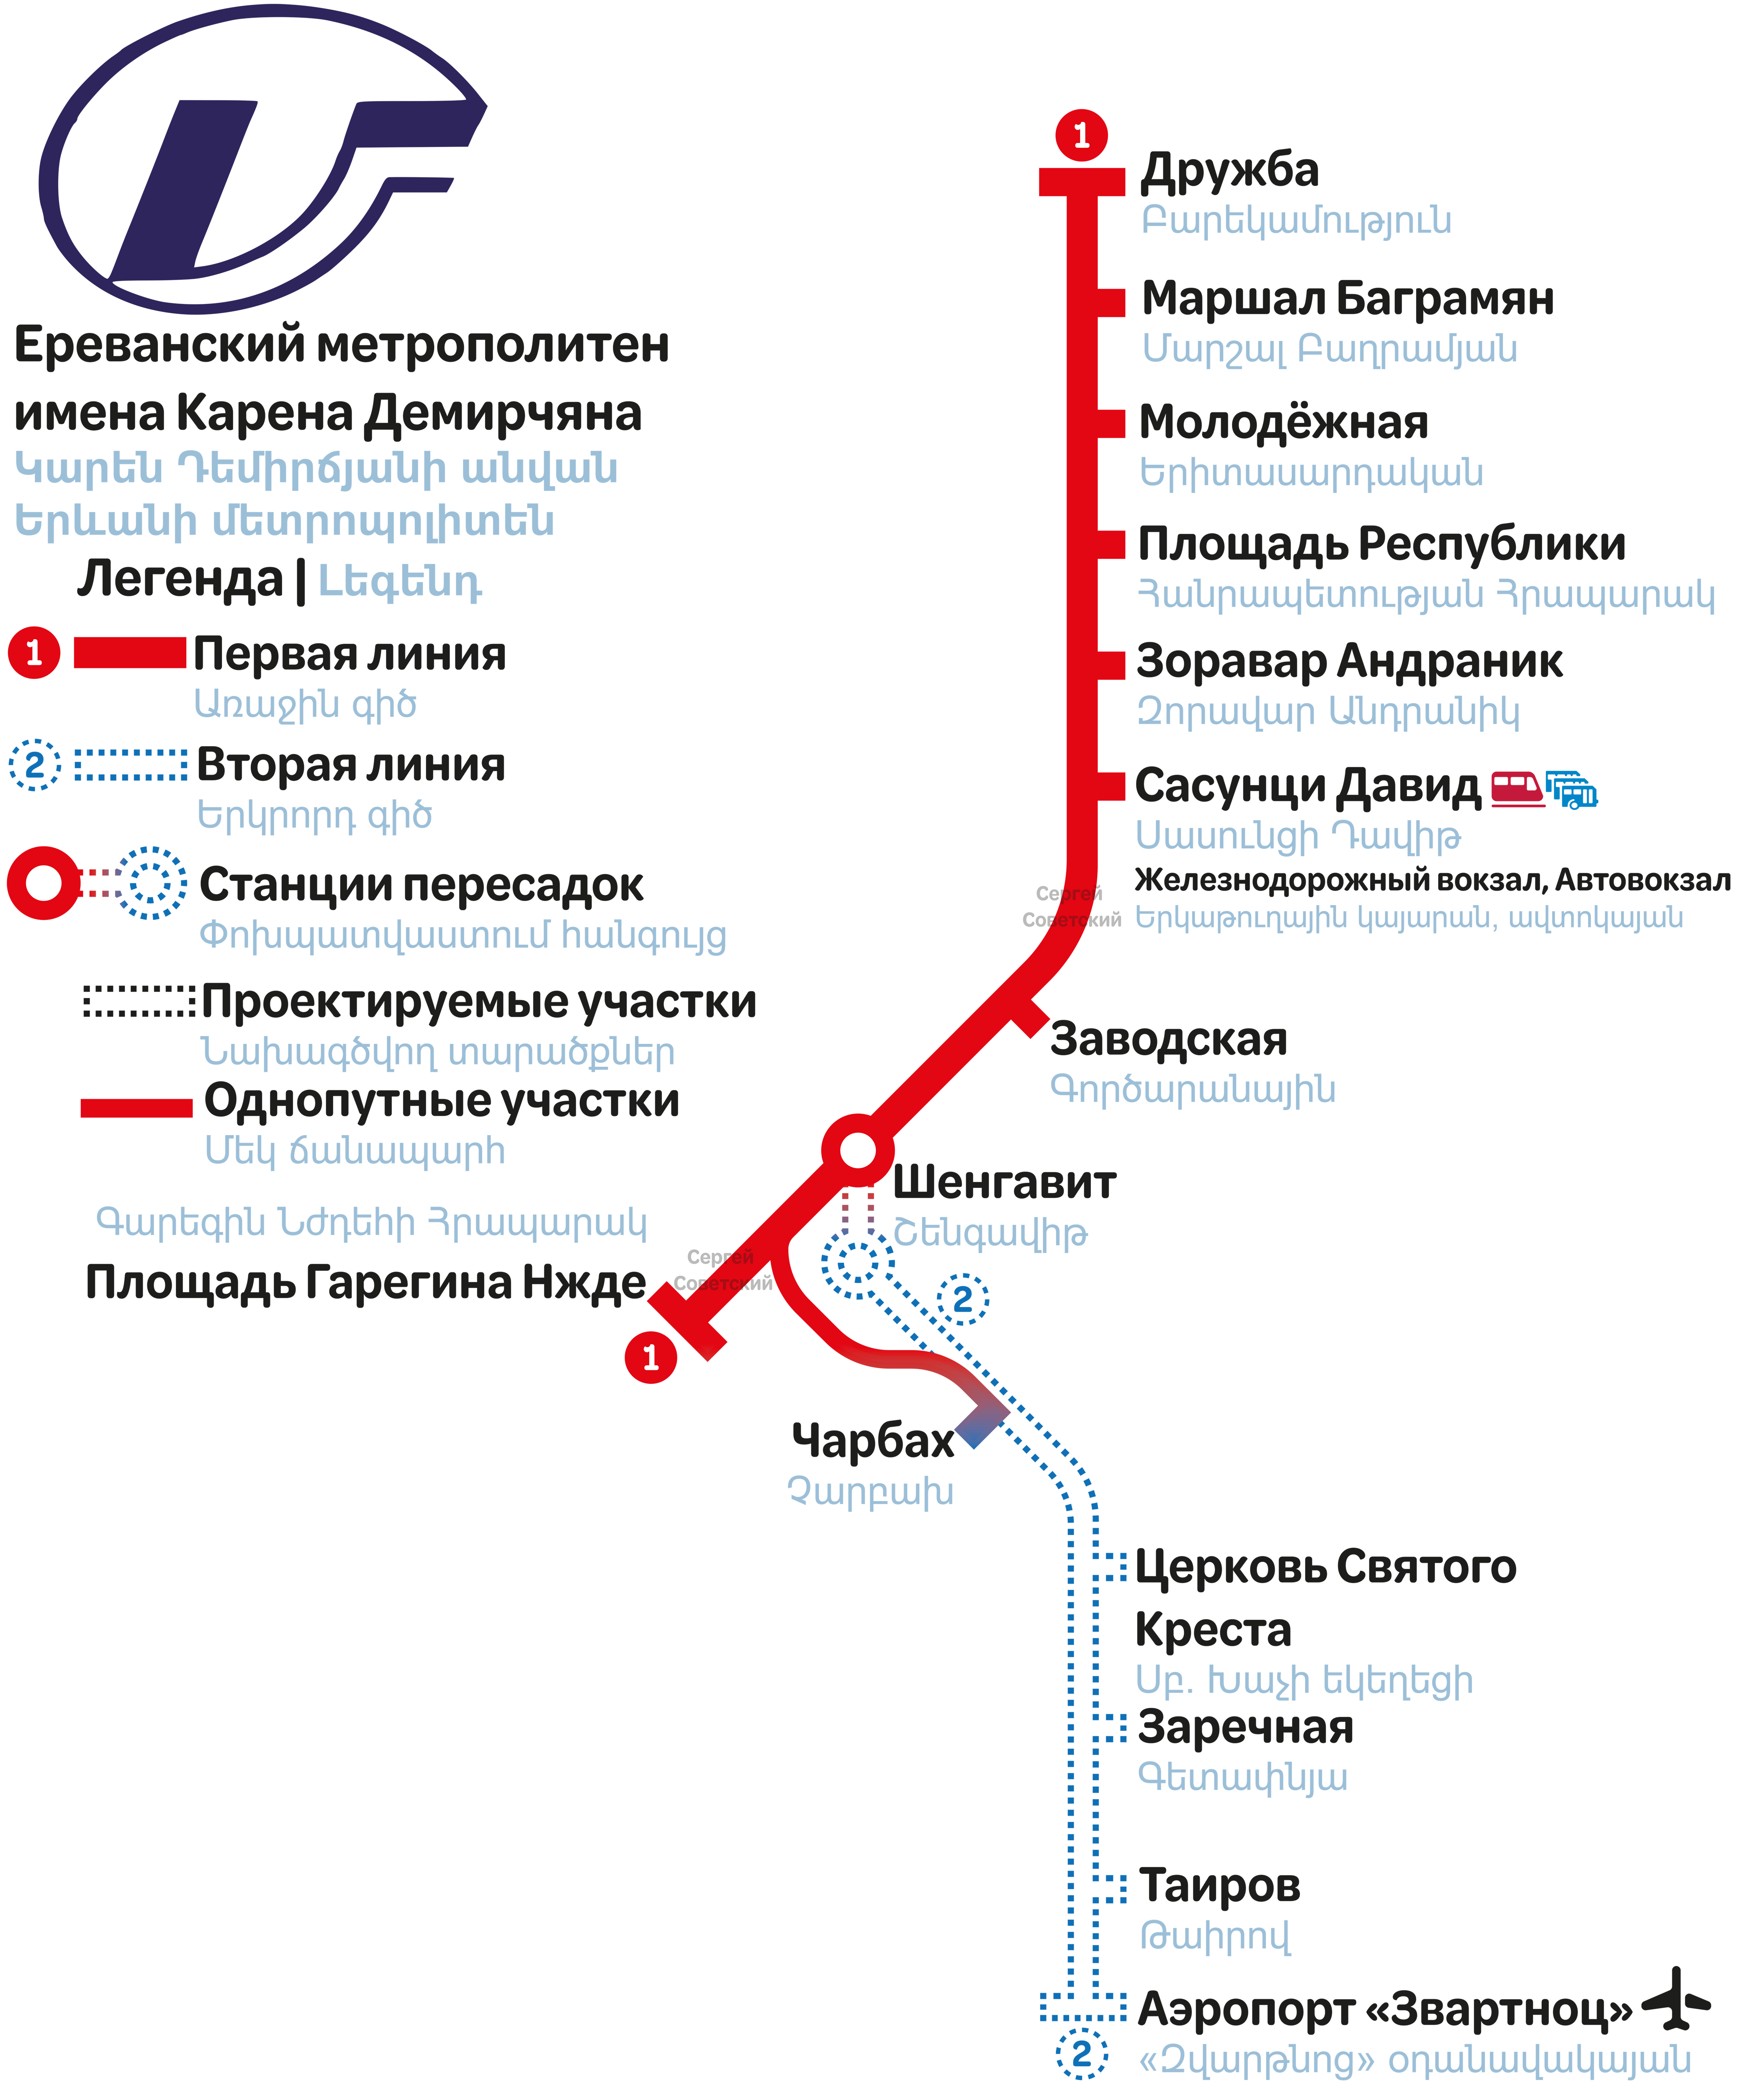 ერევანი — Maps — Metro